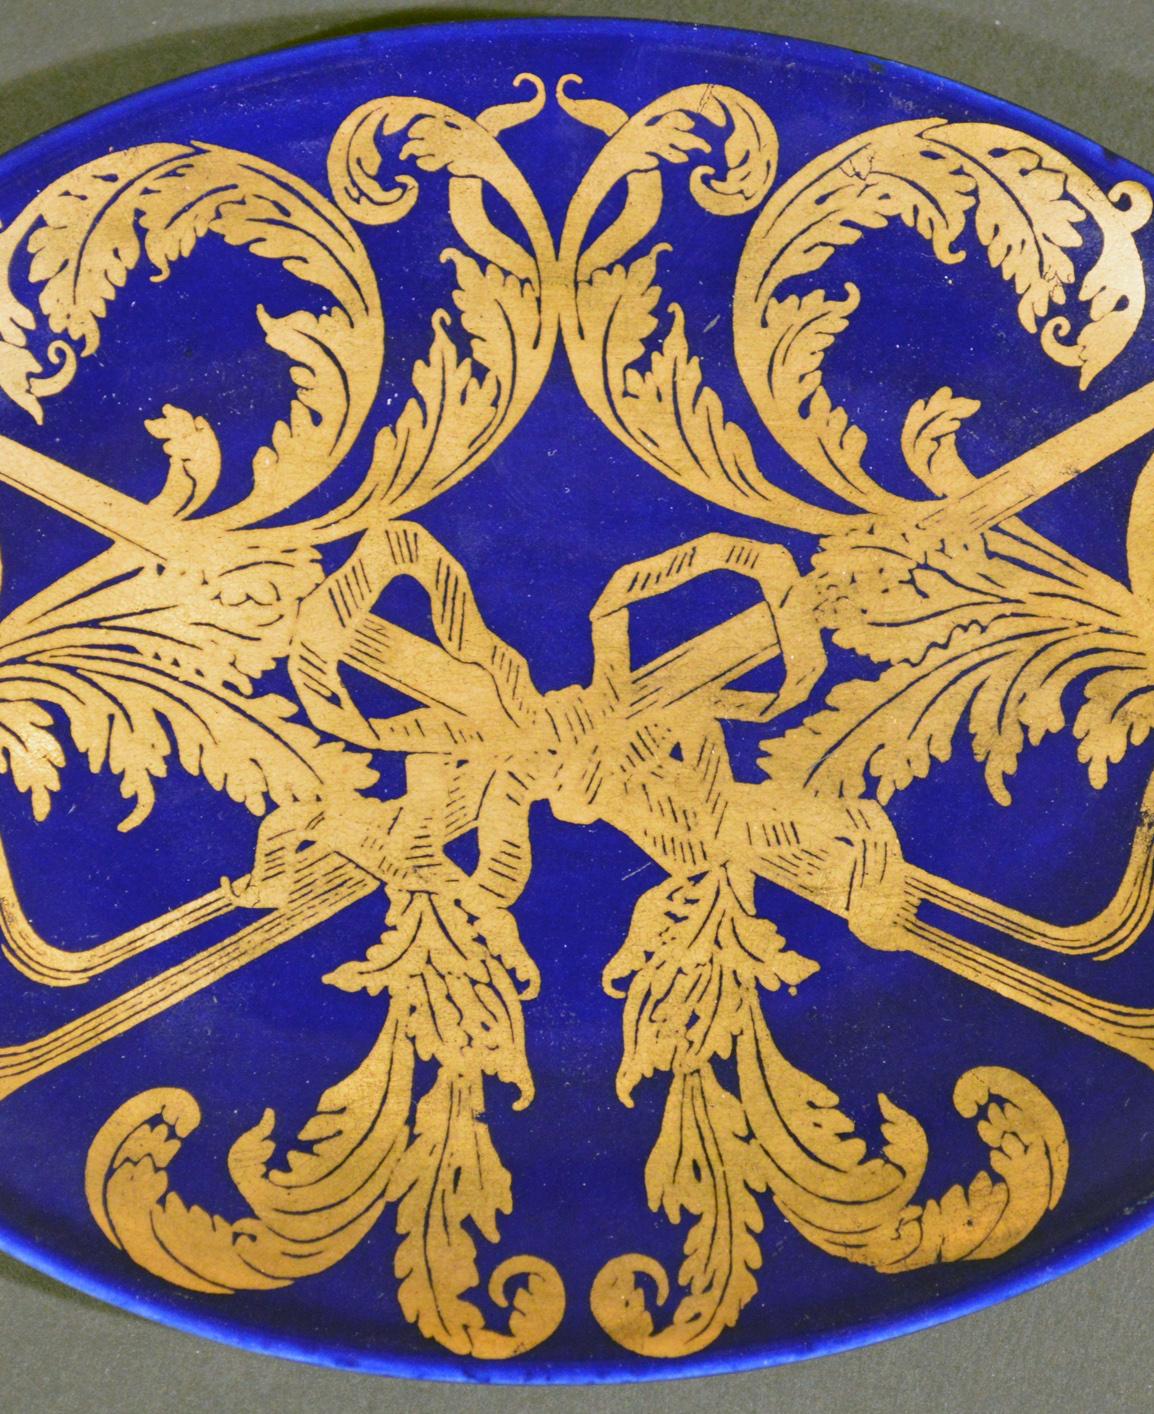 Die ovale Schale mit Pip-Motiv von Piero Fornasetti ist auf dunkelblauem Grund mit einem vergoldeten Muster aus zwei Pfeifen bemalt, die von Tabakblättern umrankt und mit einem Band in der Mitte zusammengebunden sind.

Referenz: Fornasetti: The